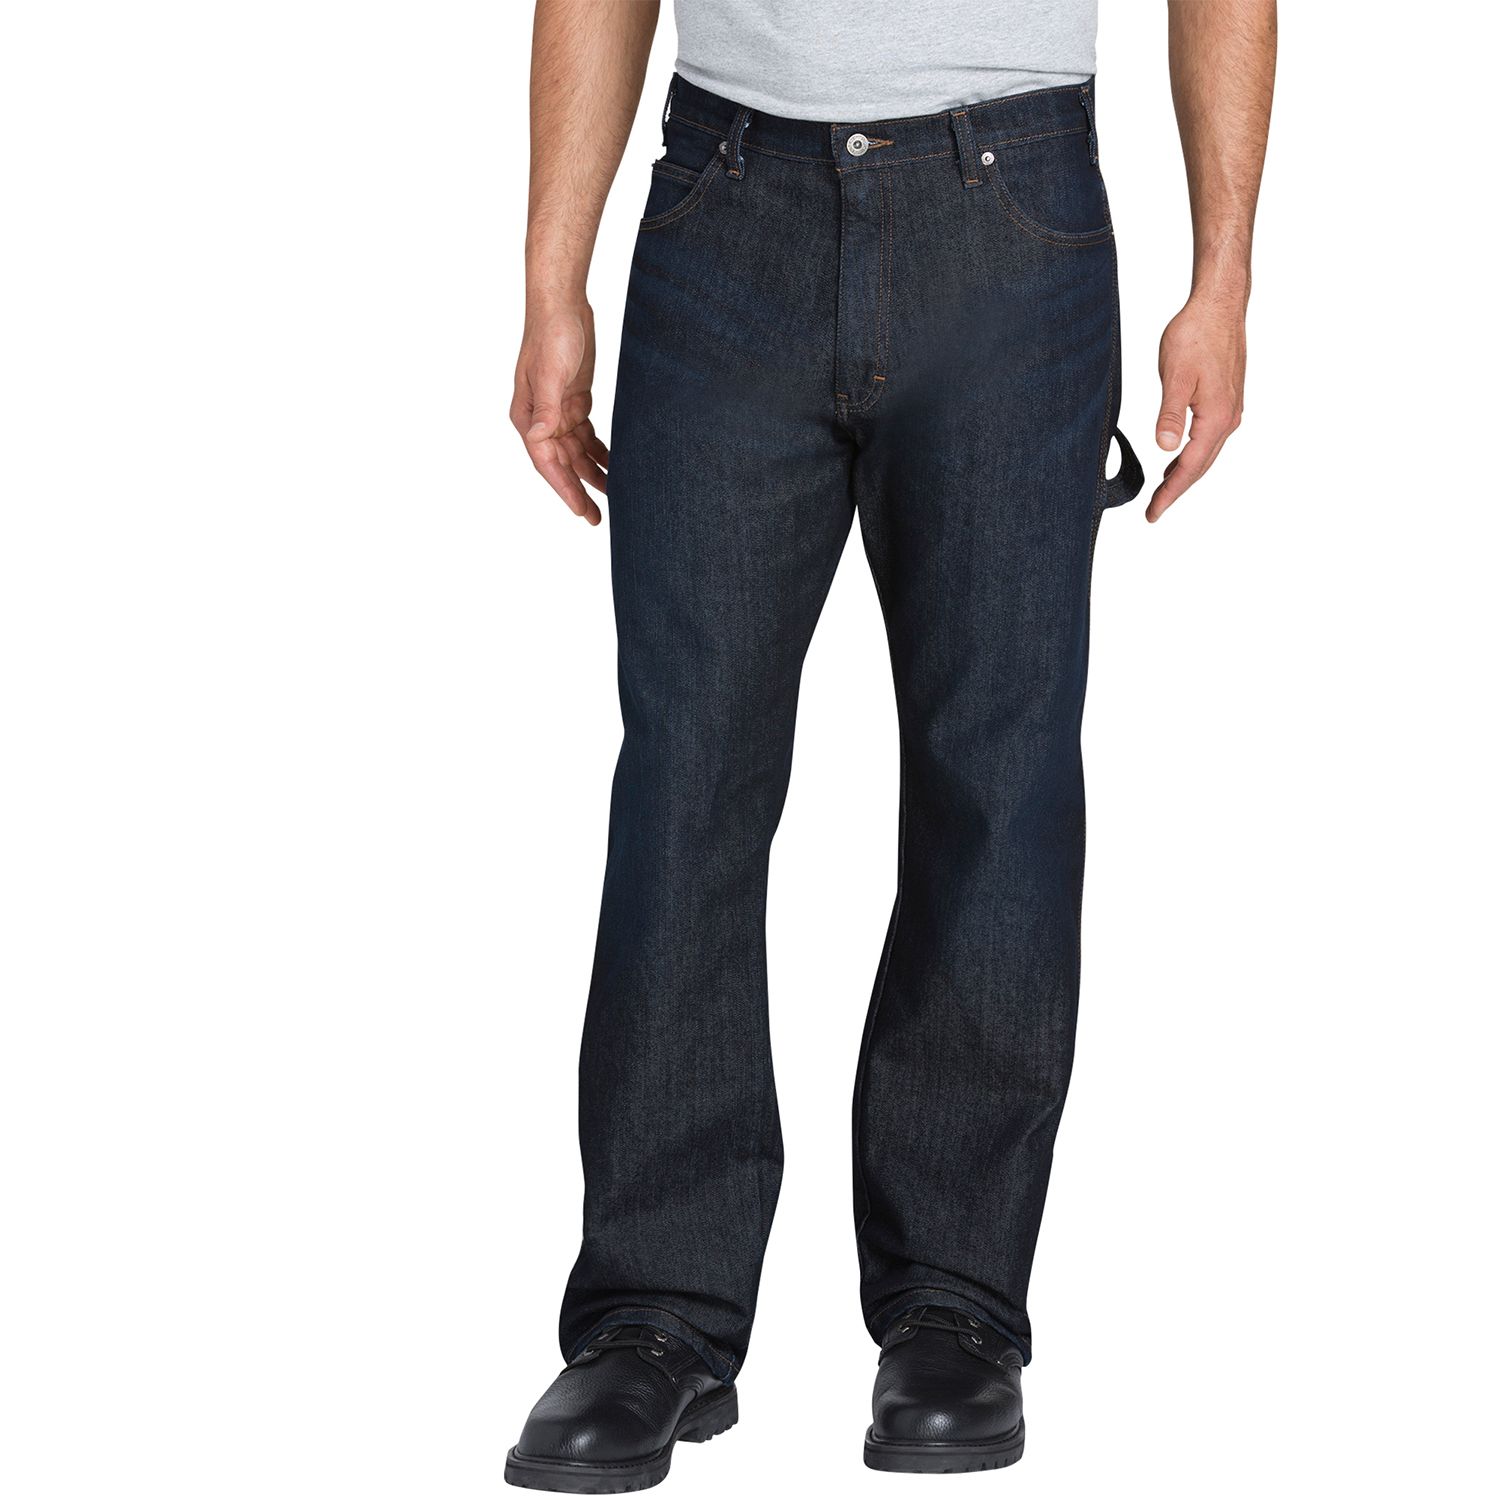 wrangler carpenter jeans kohls